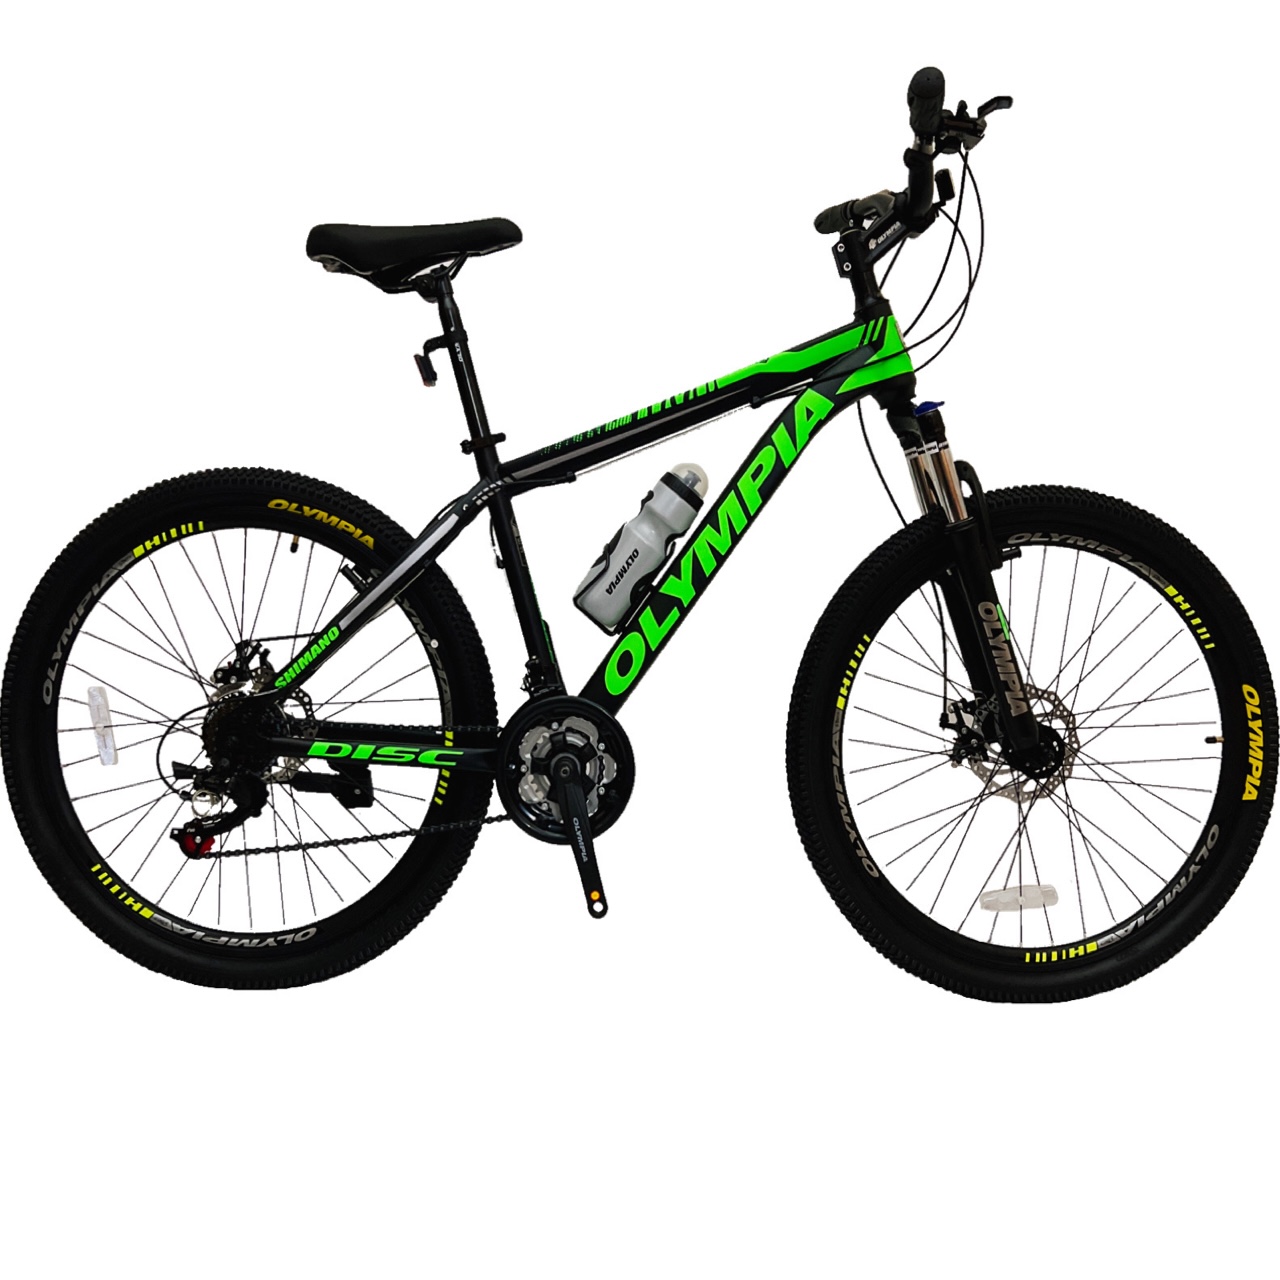 نکته خرید - قیمت روز دوچرخه کوهستان المپیا مدل NEW GEELY-DISC سایز 26 خرید